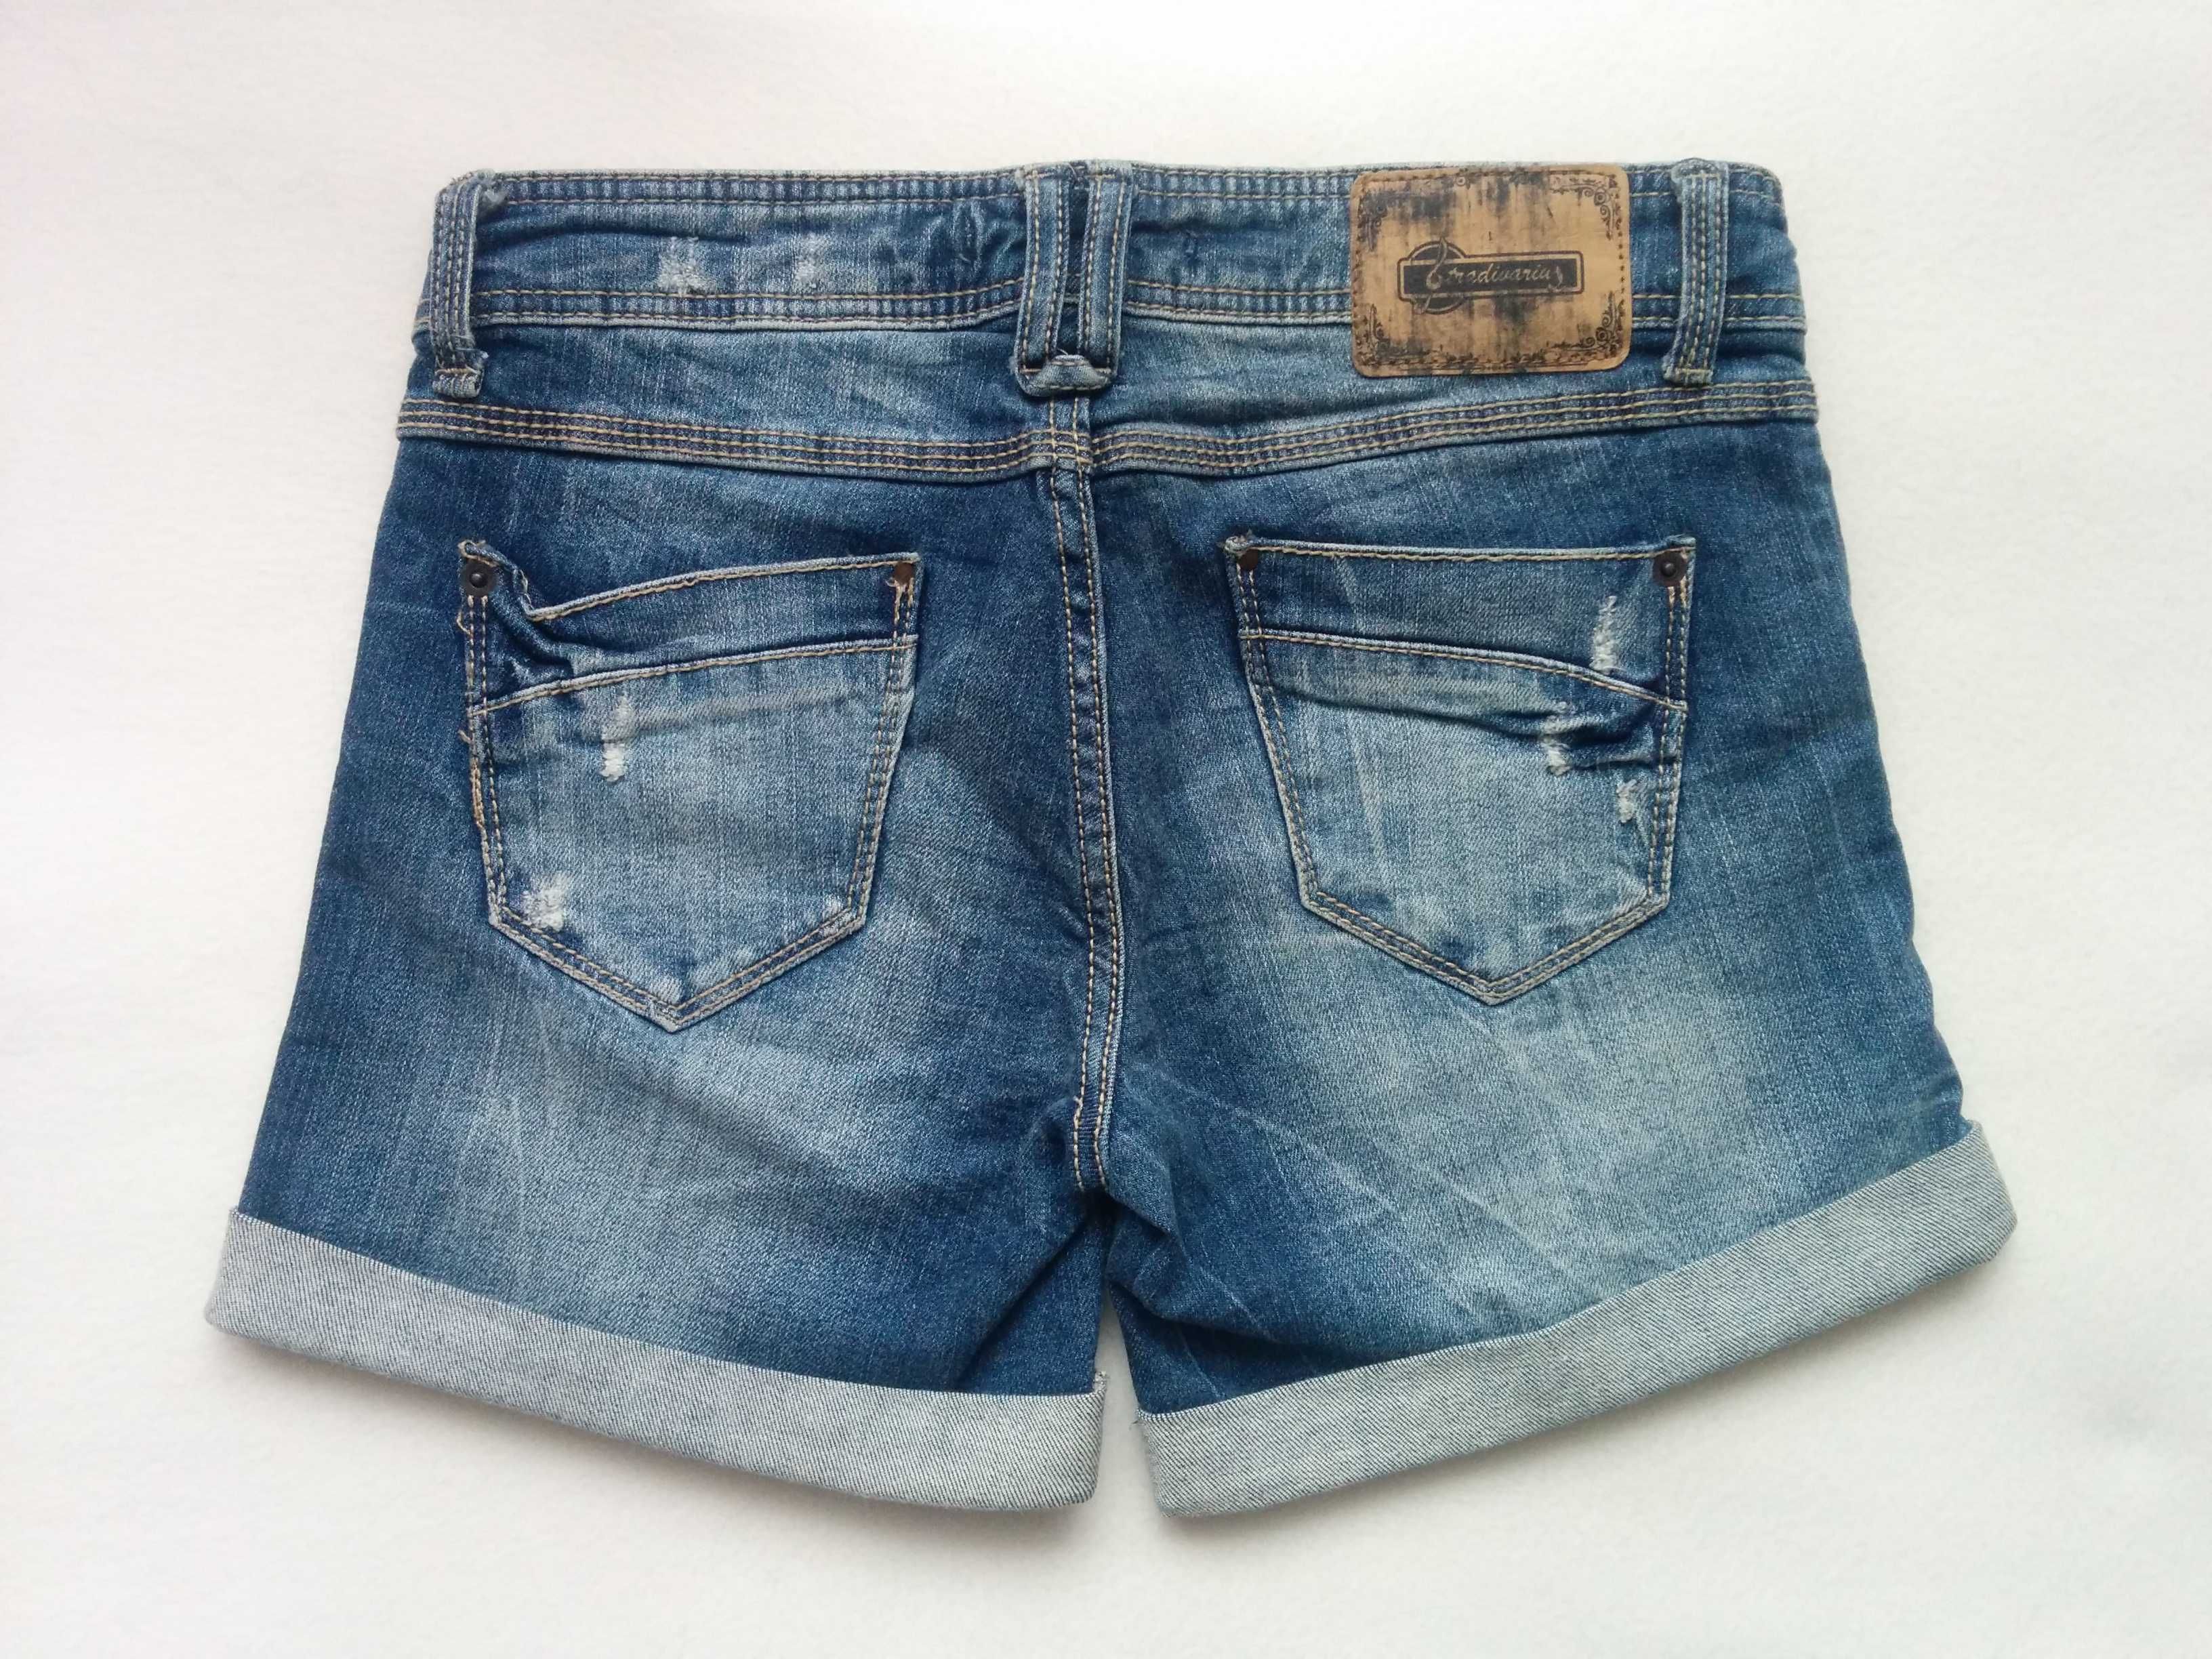 STRADIVARIUS krótkie jeansowe spodenki - dżinsowe szorty